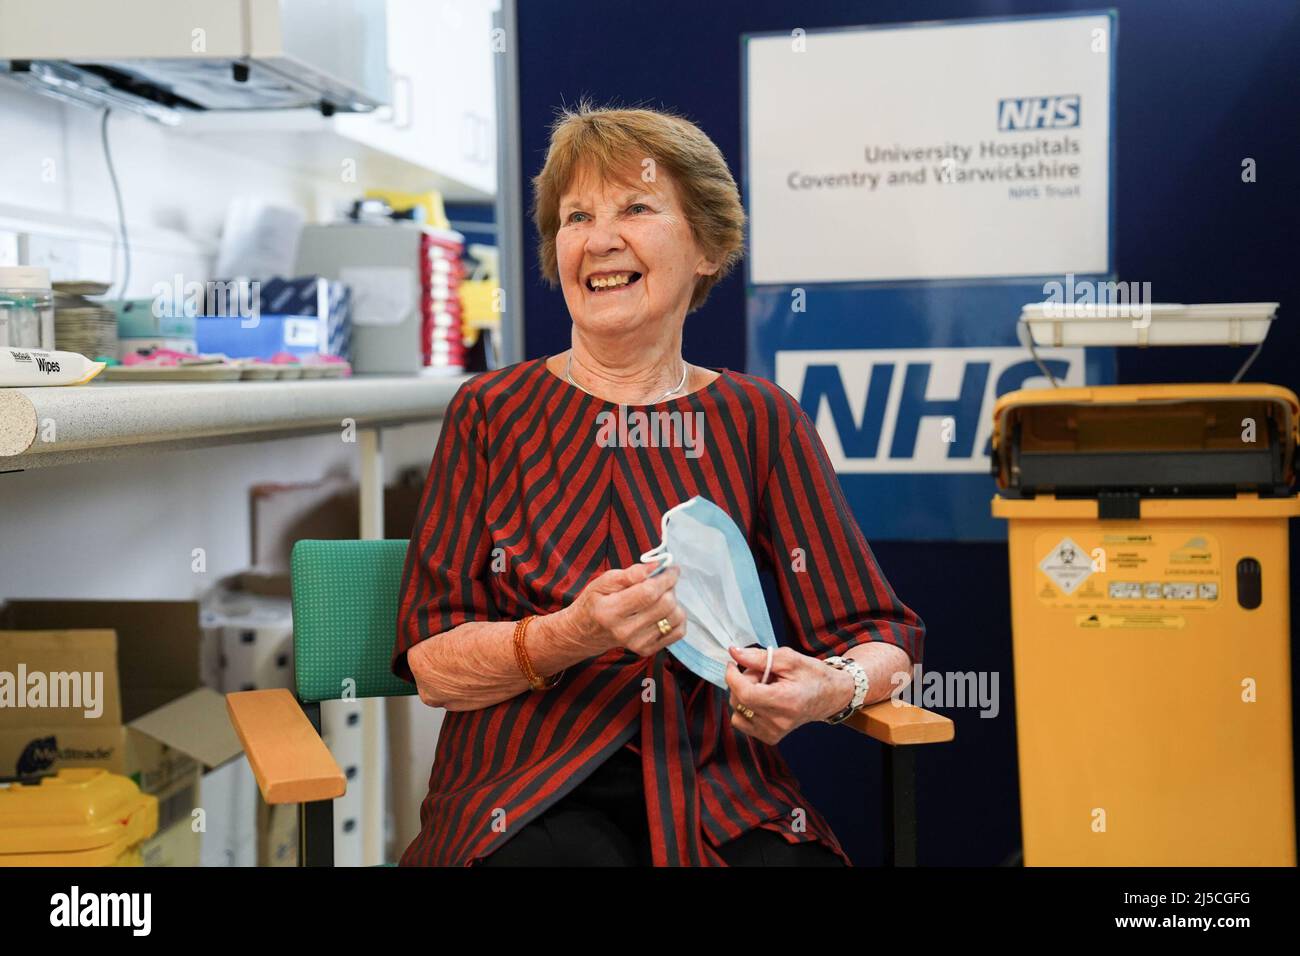 RETRANSMISE CORRIGEANT L'ÂGE DE 91 À 92 Margaret Keenan, 92 ans, arrive à recevoir sa dose de rappel Covid-19 de printemps à l'hôpital universitaire de Coventry. Mme Keenan, connue sous le nom de Maggie, a été la première patiente du Royaume-Uni à recevoir le vaccin Pfizer/BioNtech Covid-19. Date de la photo: Vendredi 22 avril 2022. Banque D'Images